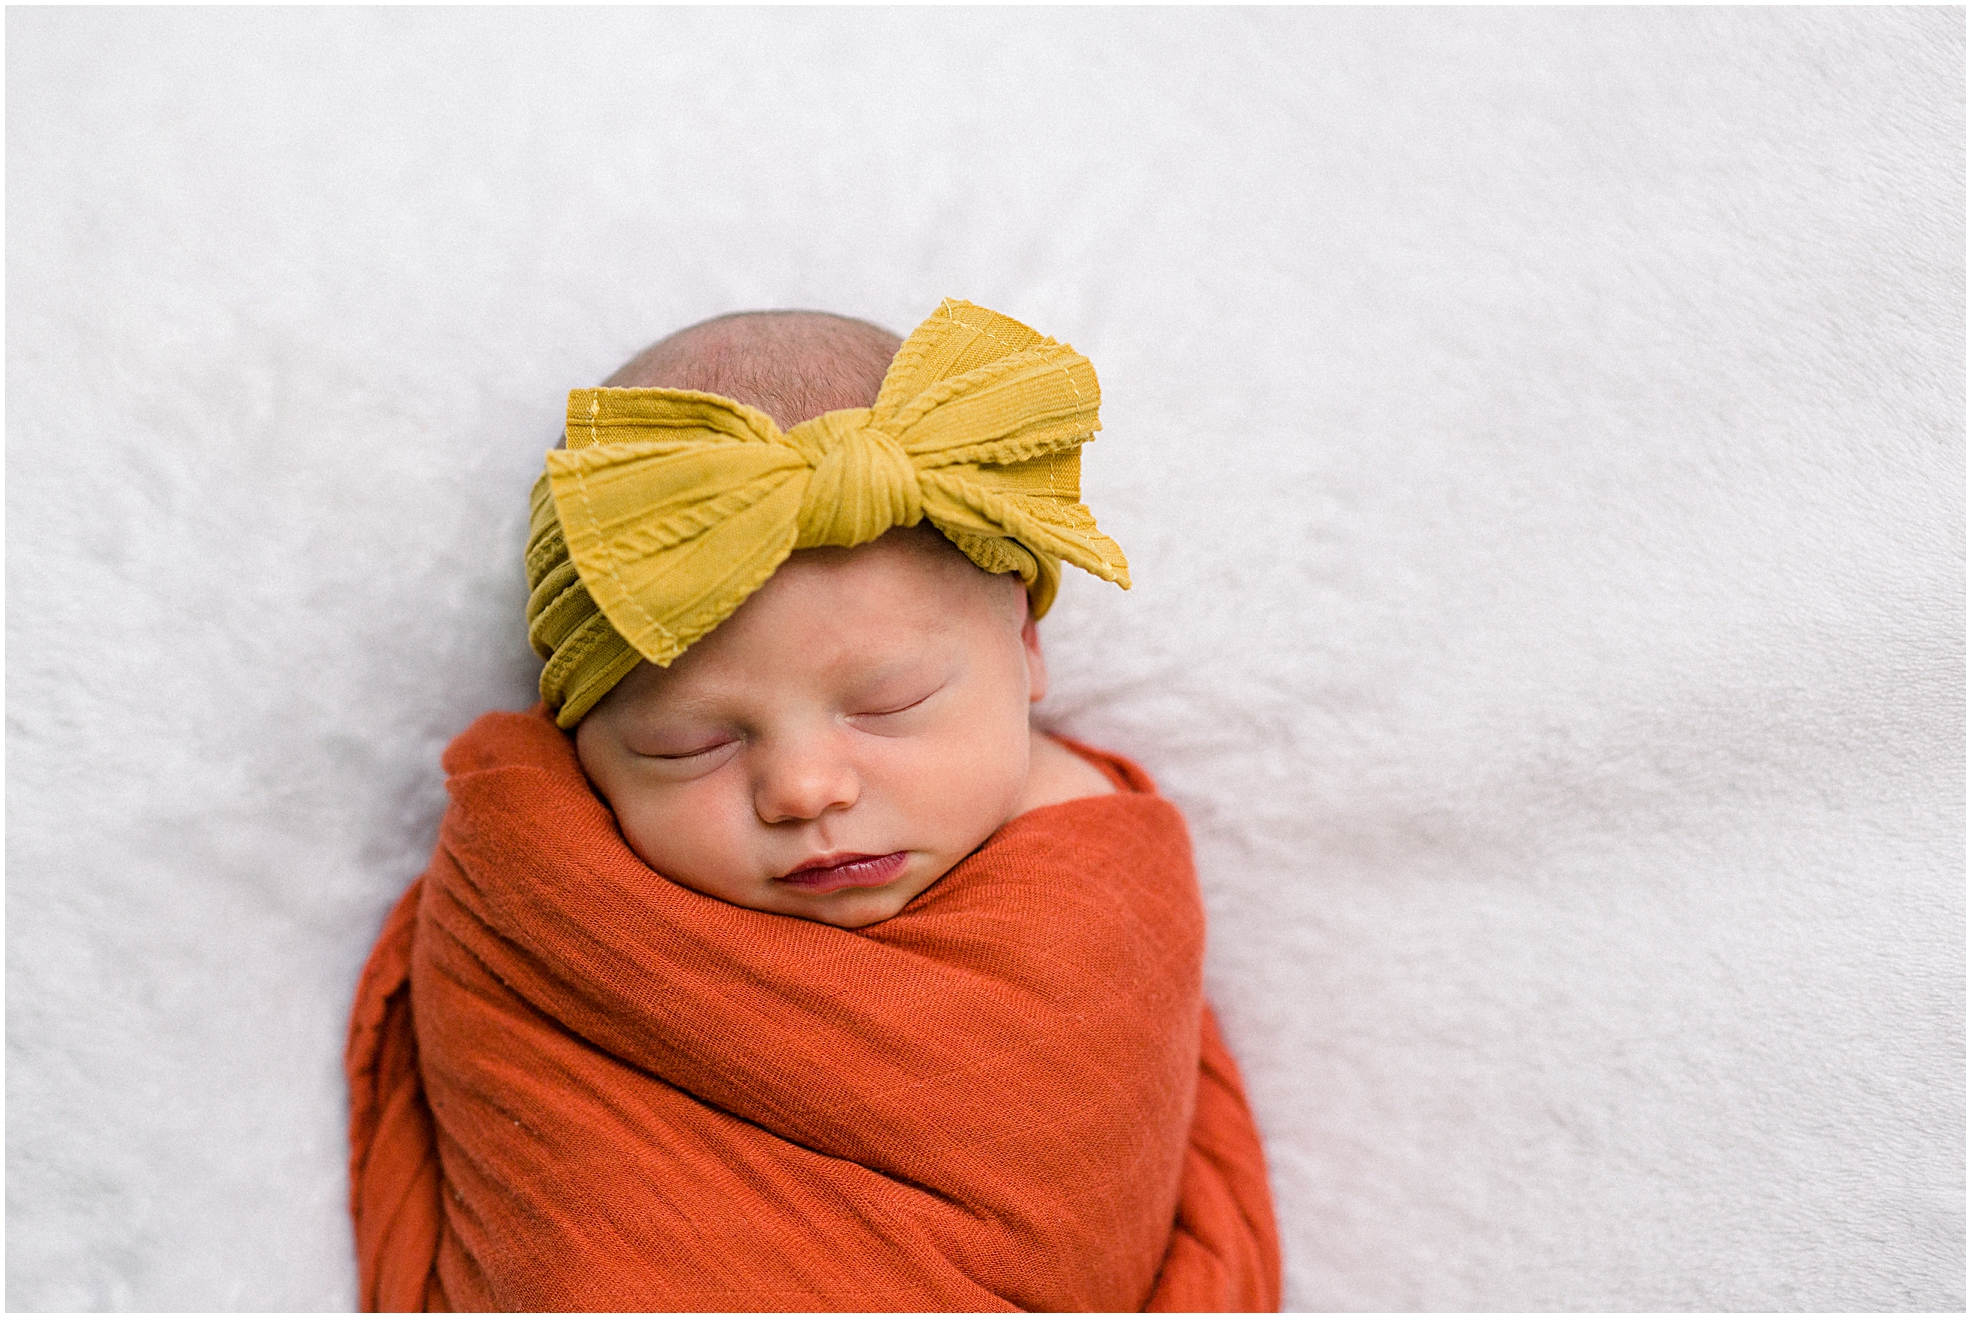 Newborn photography in Newnan, Georgia.